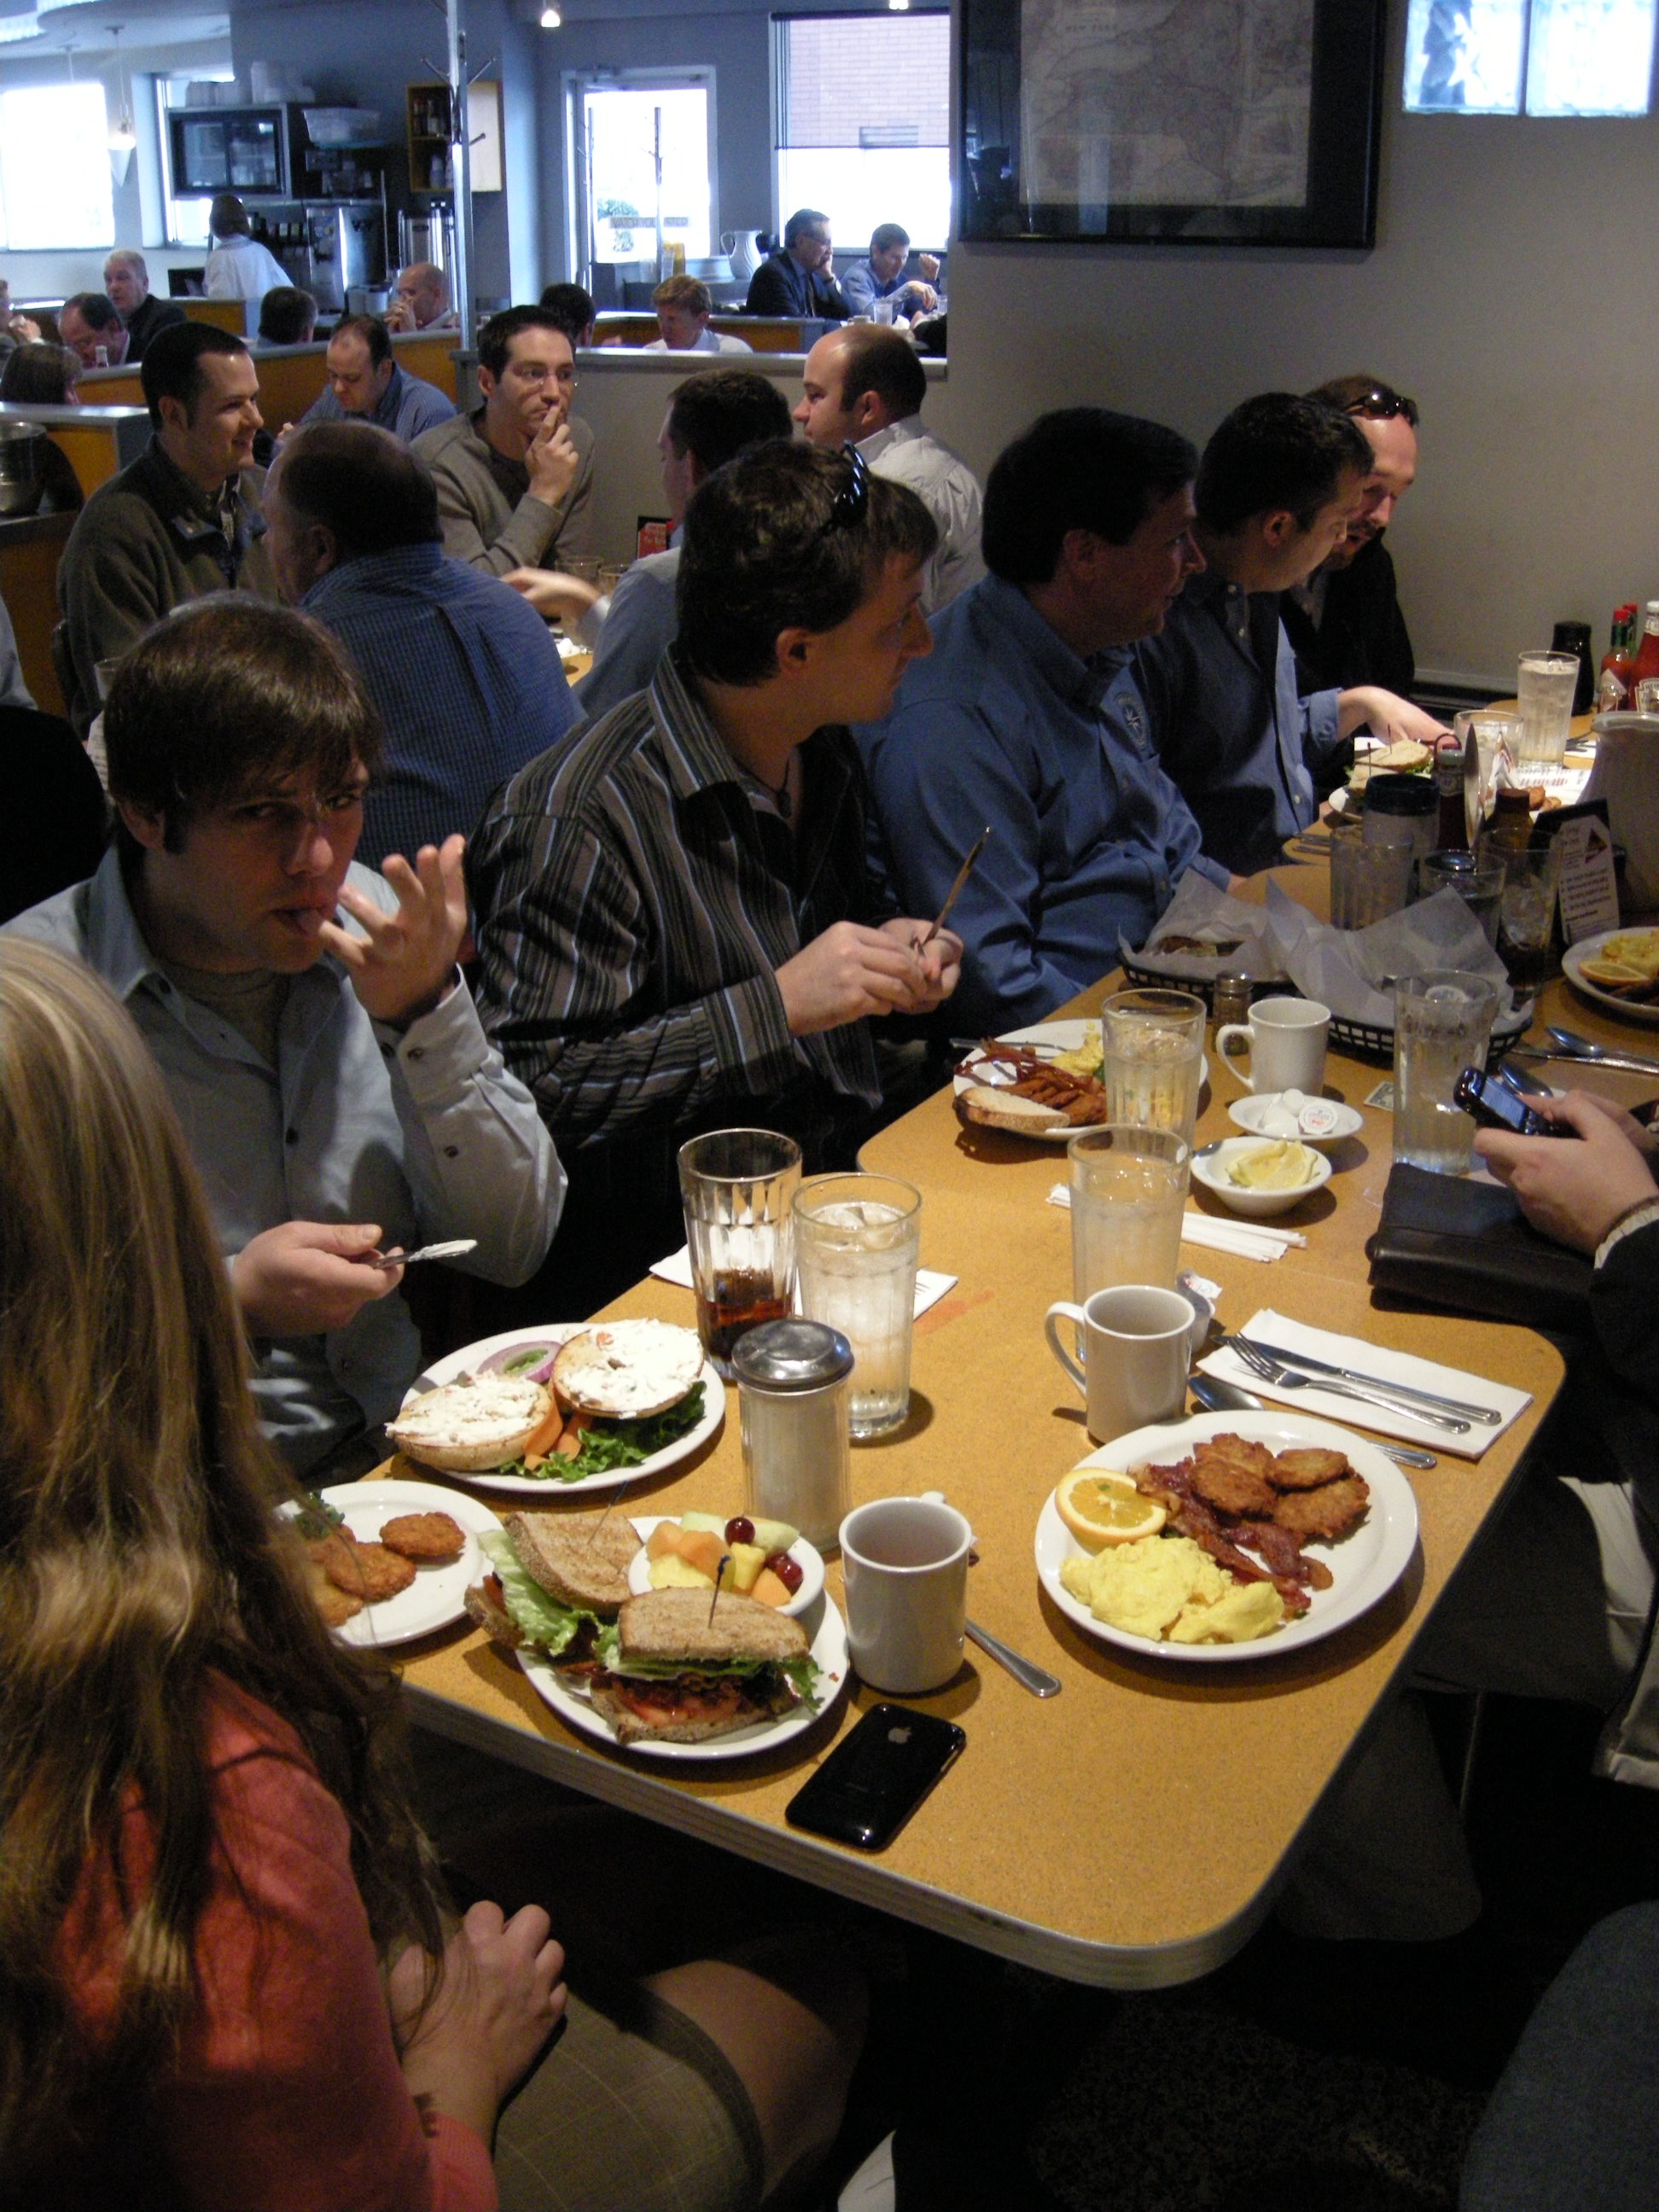 nashville-geek-breakfast---feb-2009_3311394221_o.jpg